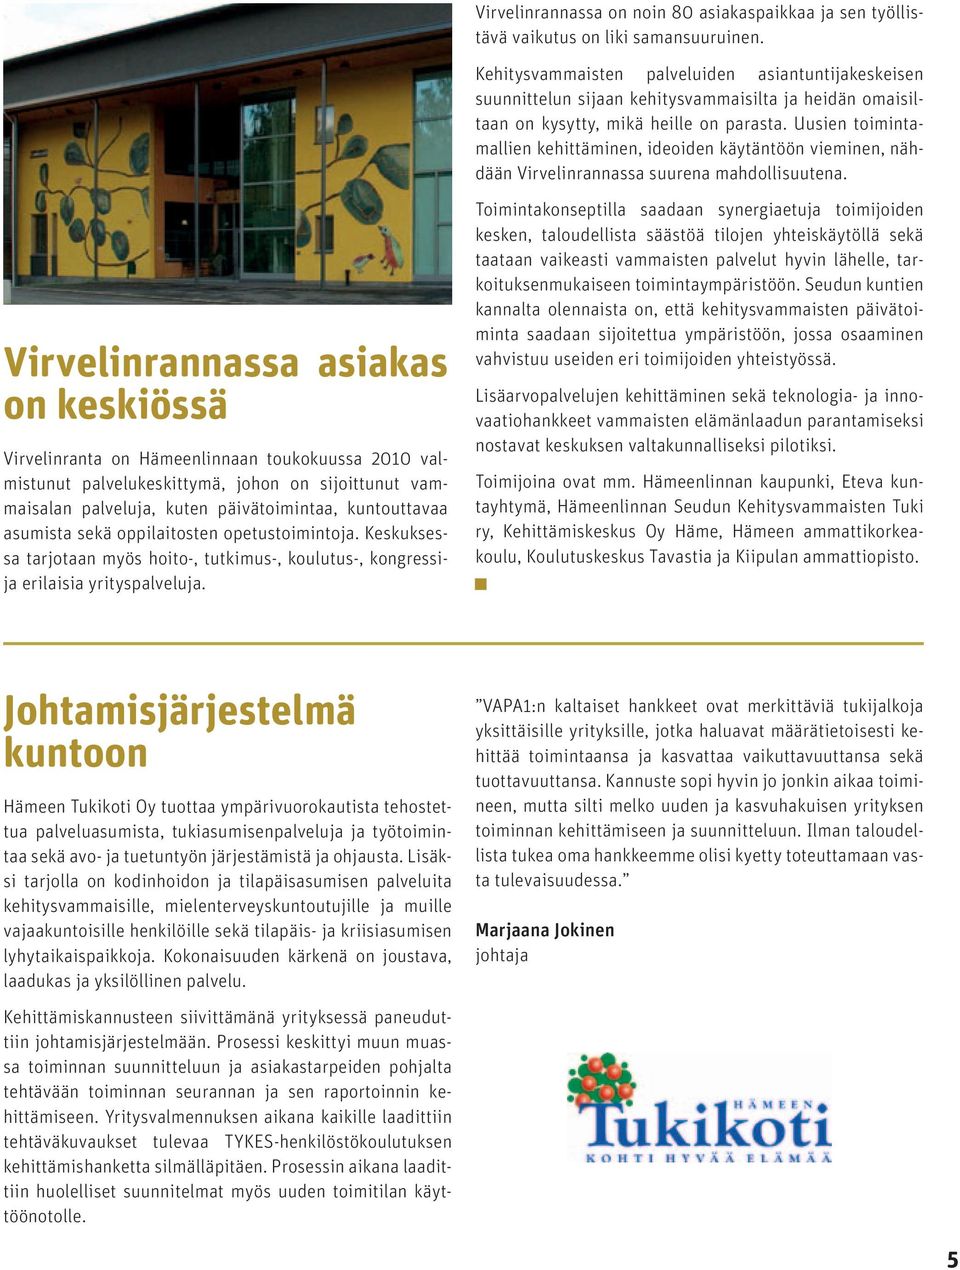 Uusien toimintamallien kehittäminen, ideoiden käytäntöön vieminen, nähdään Virvelinrannassa suurena mahdollisuutena.